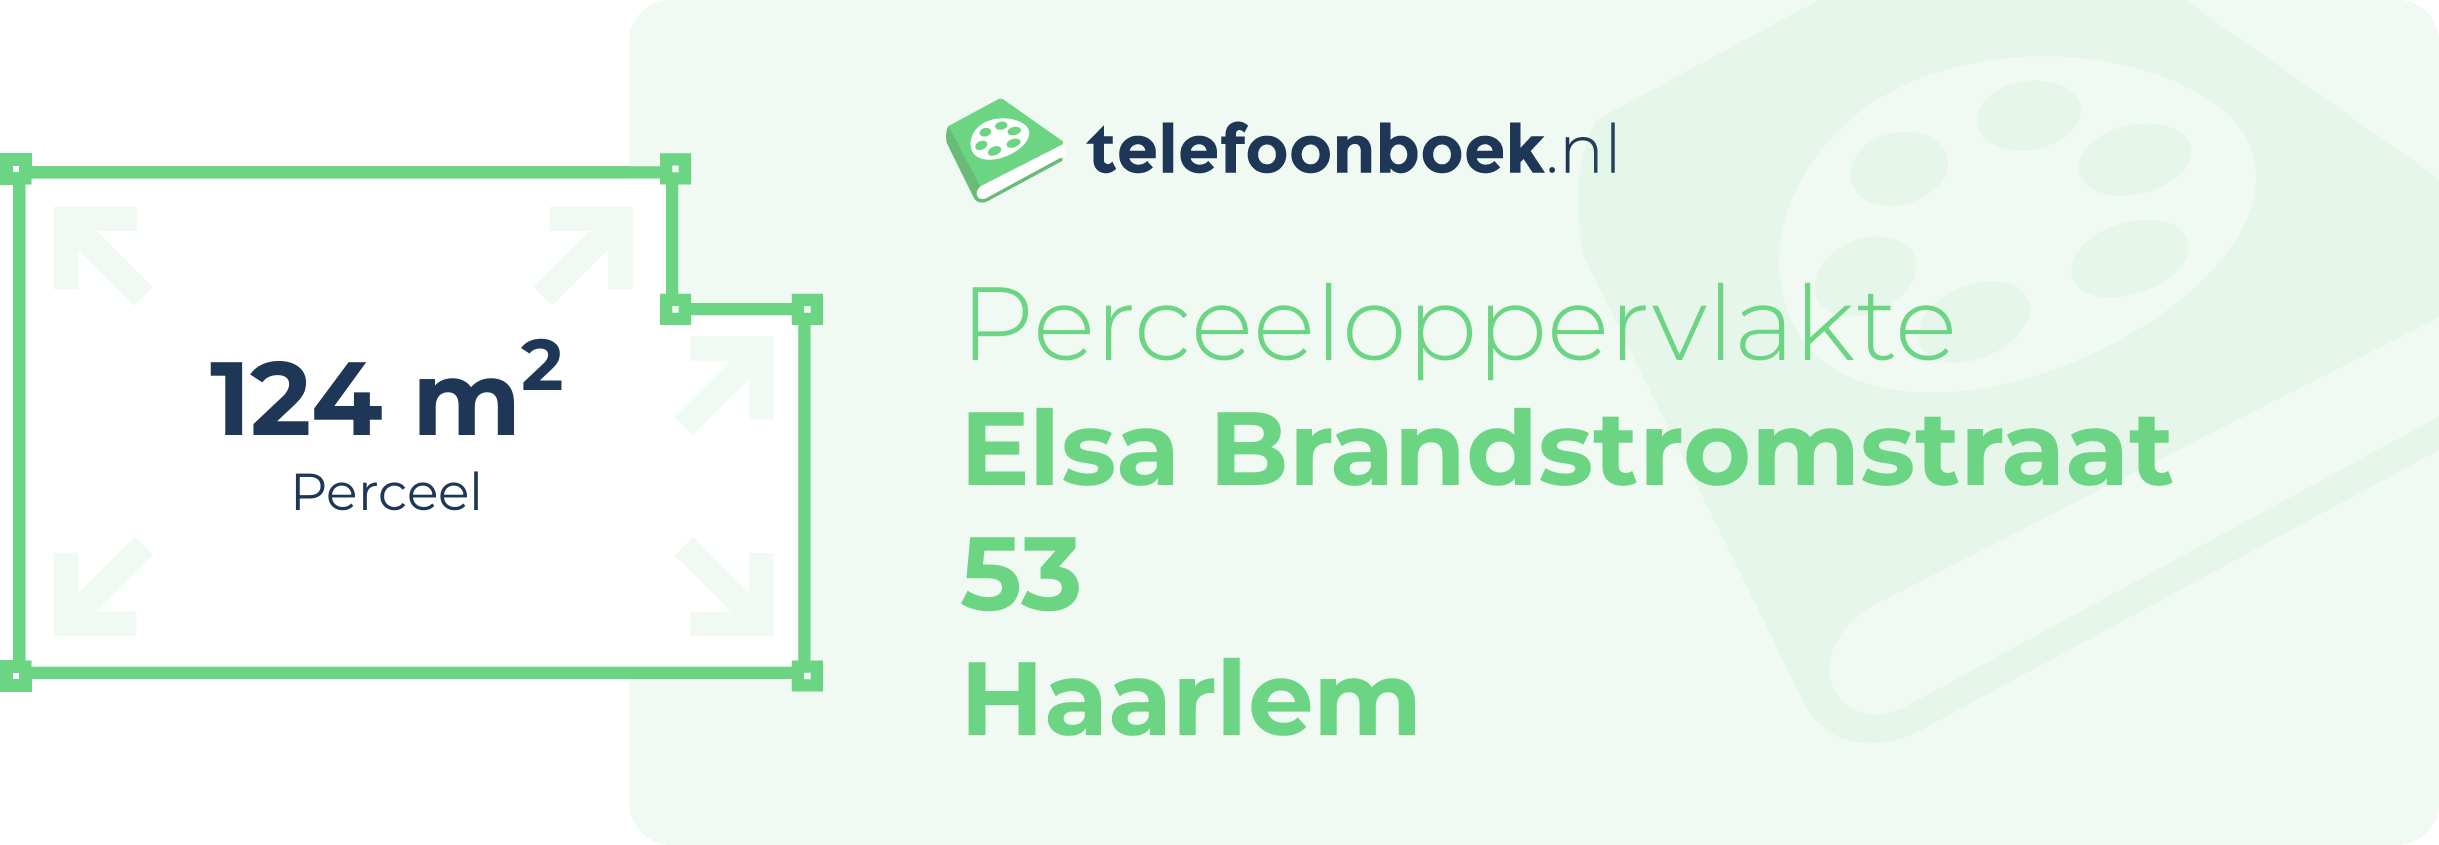 Perceeloppervlakte Elsa Brandstromstraat 53 Haarlem